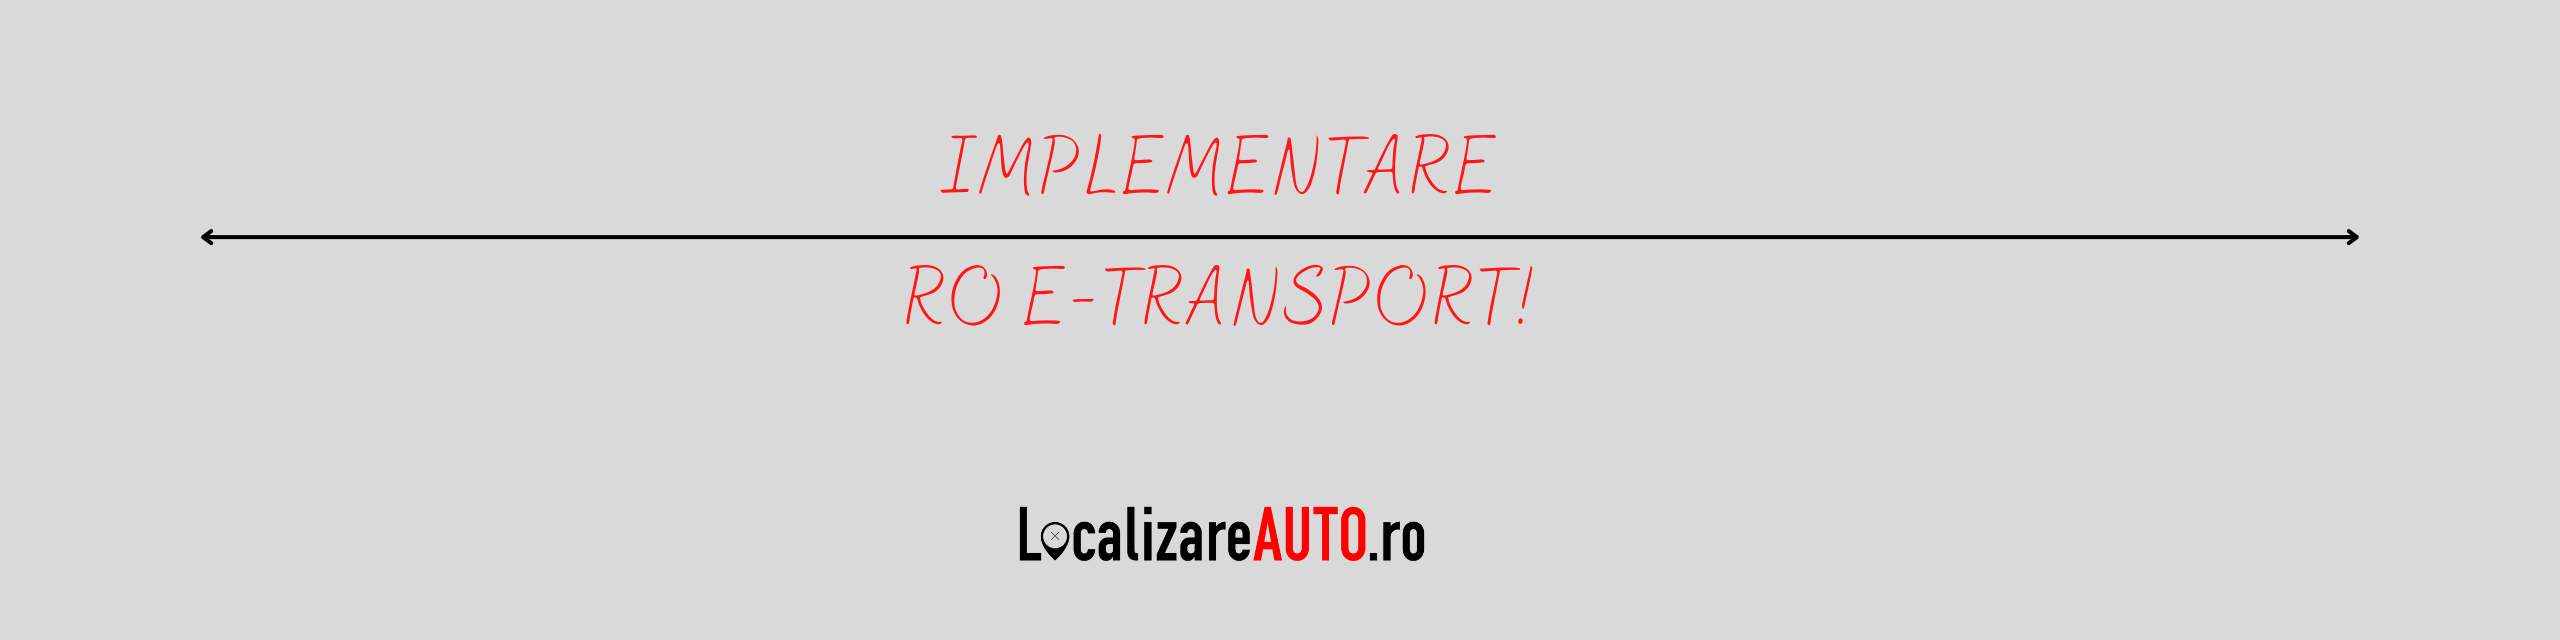 Implementarea sistemului RO E-TRANSPORT!!